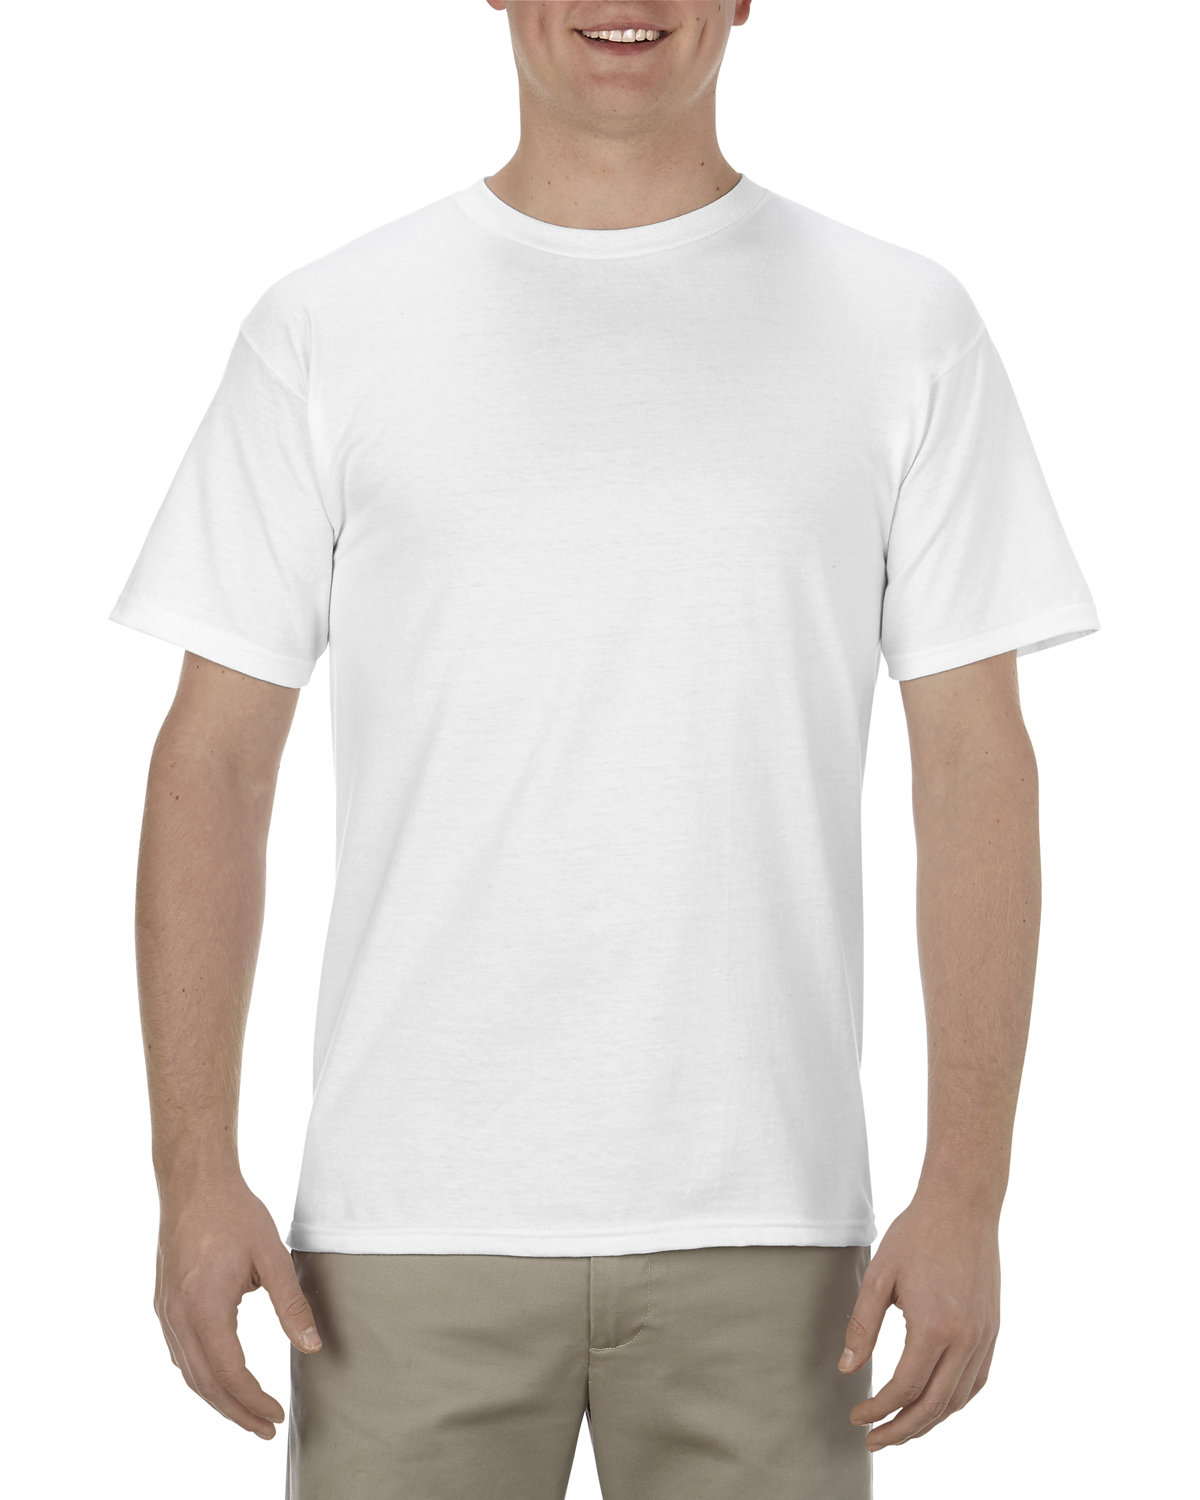 American Apparel Adult 5.1 oz., 100% Soft Spun Cotton T-Shirt WHITE 